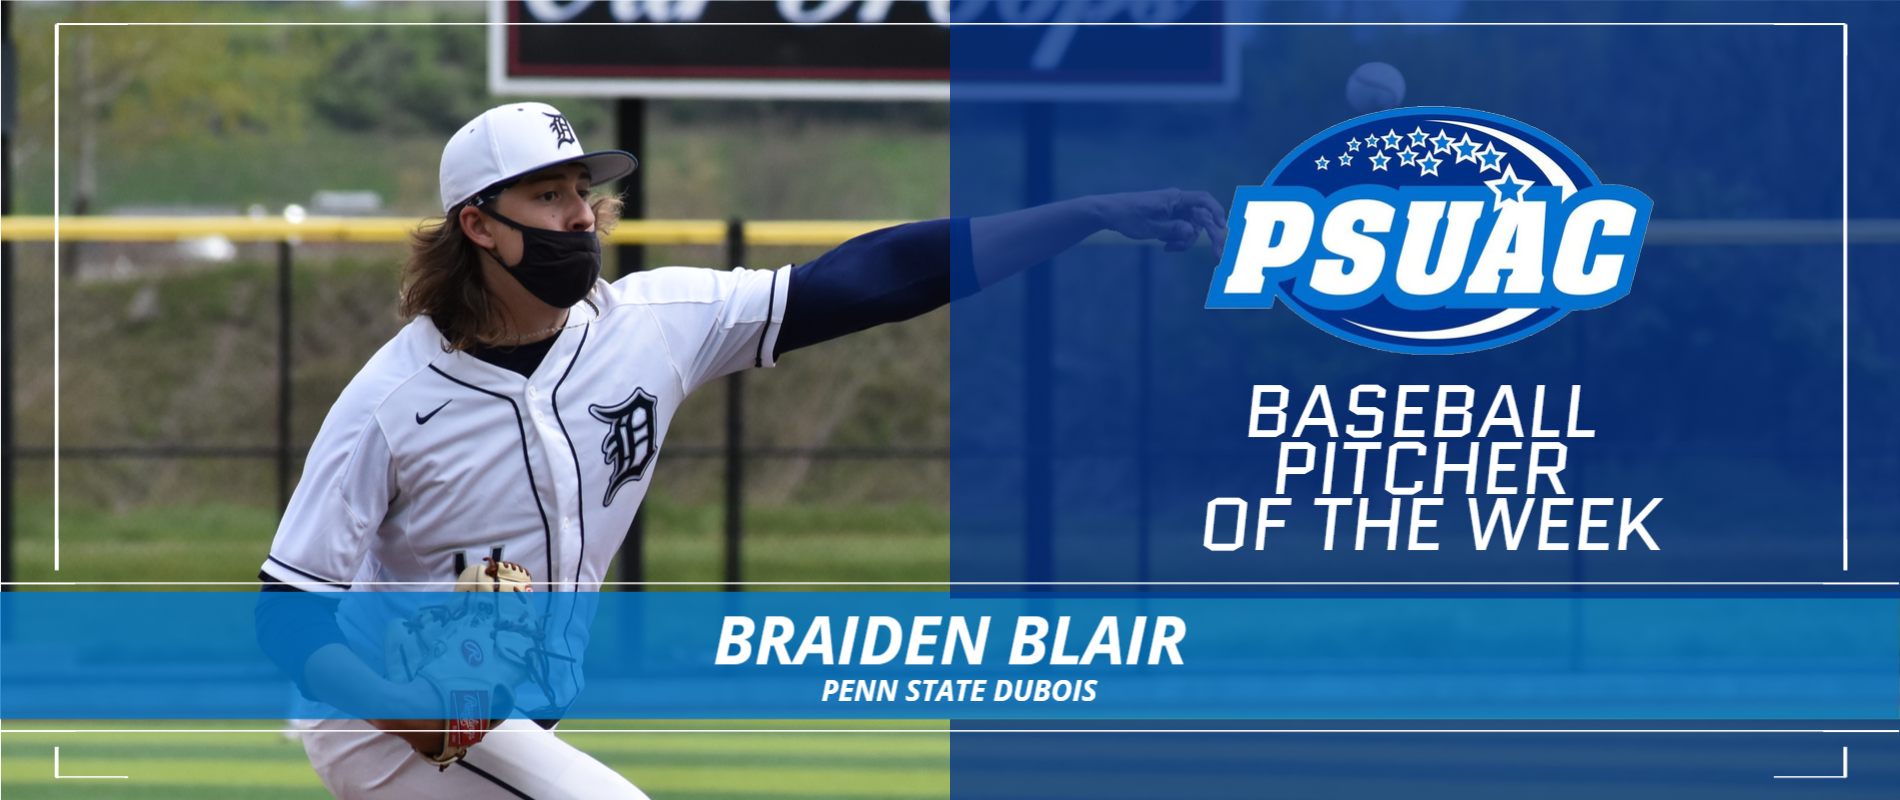 Penn State DuBois' Braiden Blair.